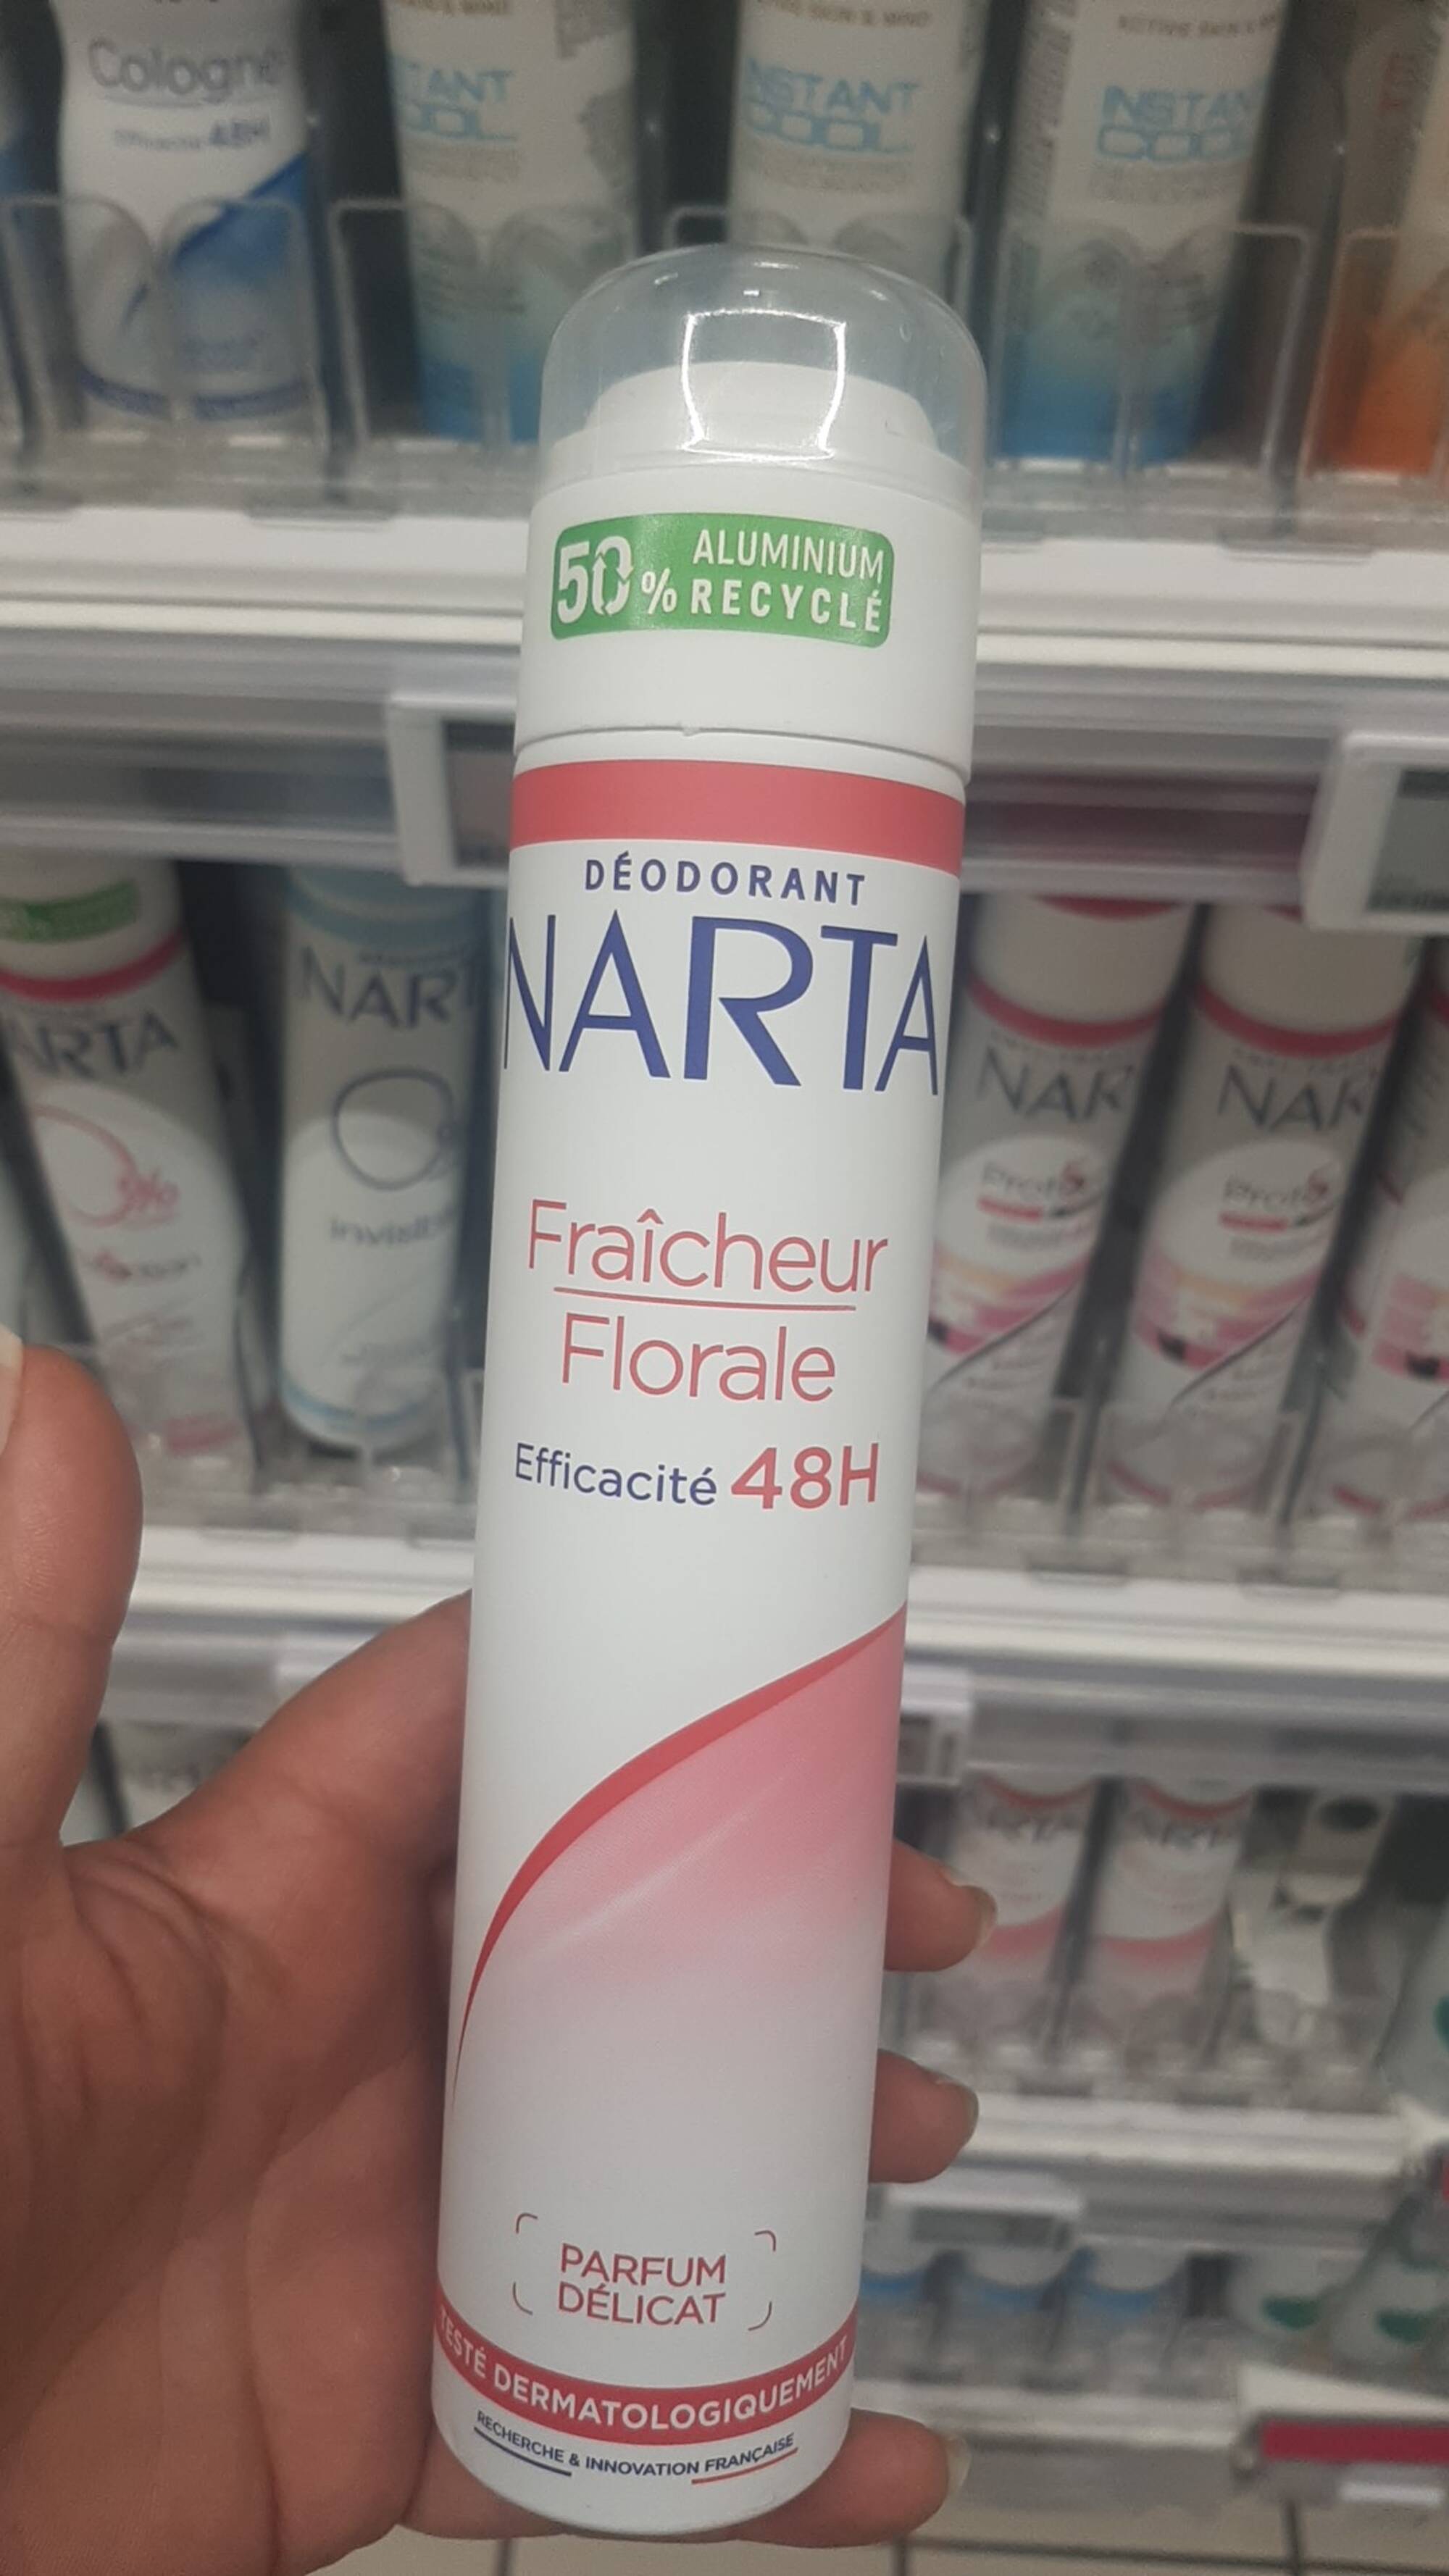 NARTA - Fraîcheur florale - Déodorant parfum délicat